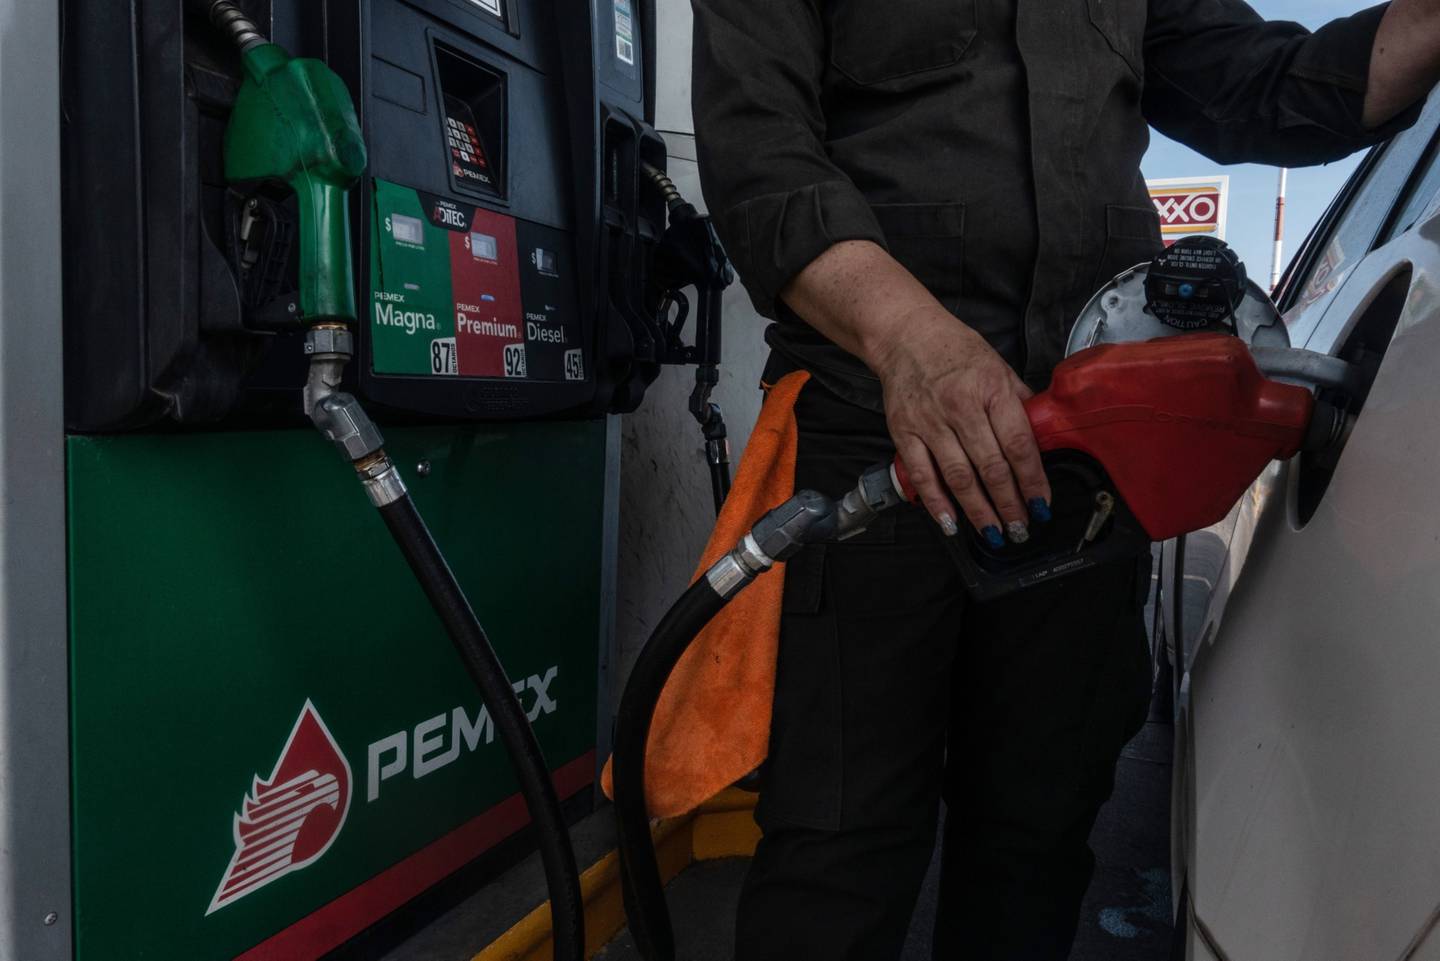 Con la aplicación de los estímulos fiscales, el Gobierno estará absorbiendo alrededor de 9.36 pesos por litro de la gasolina Magna y 7.38 pesos para la Premium